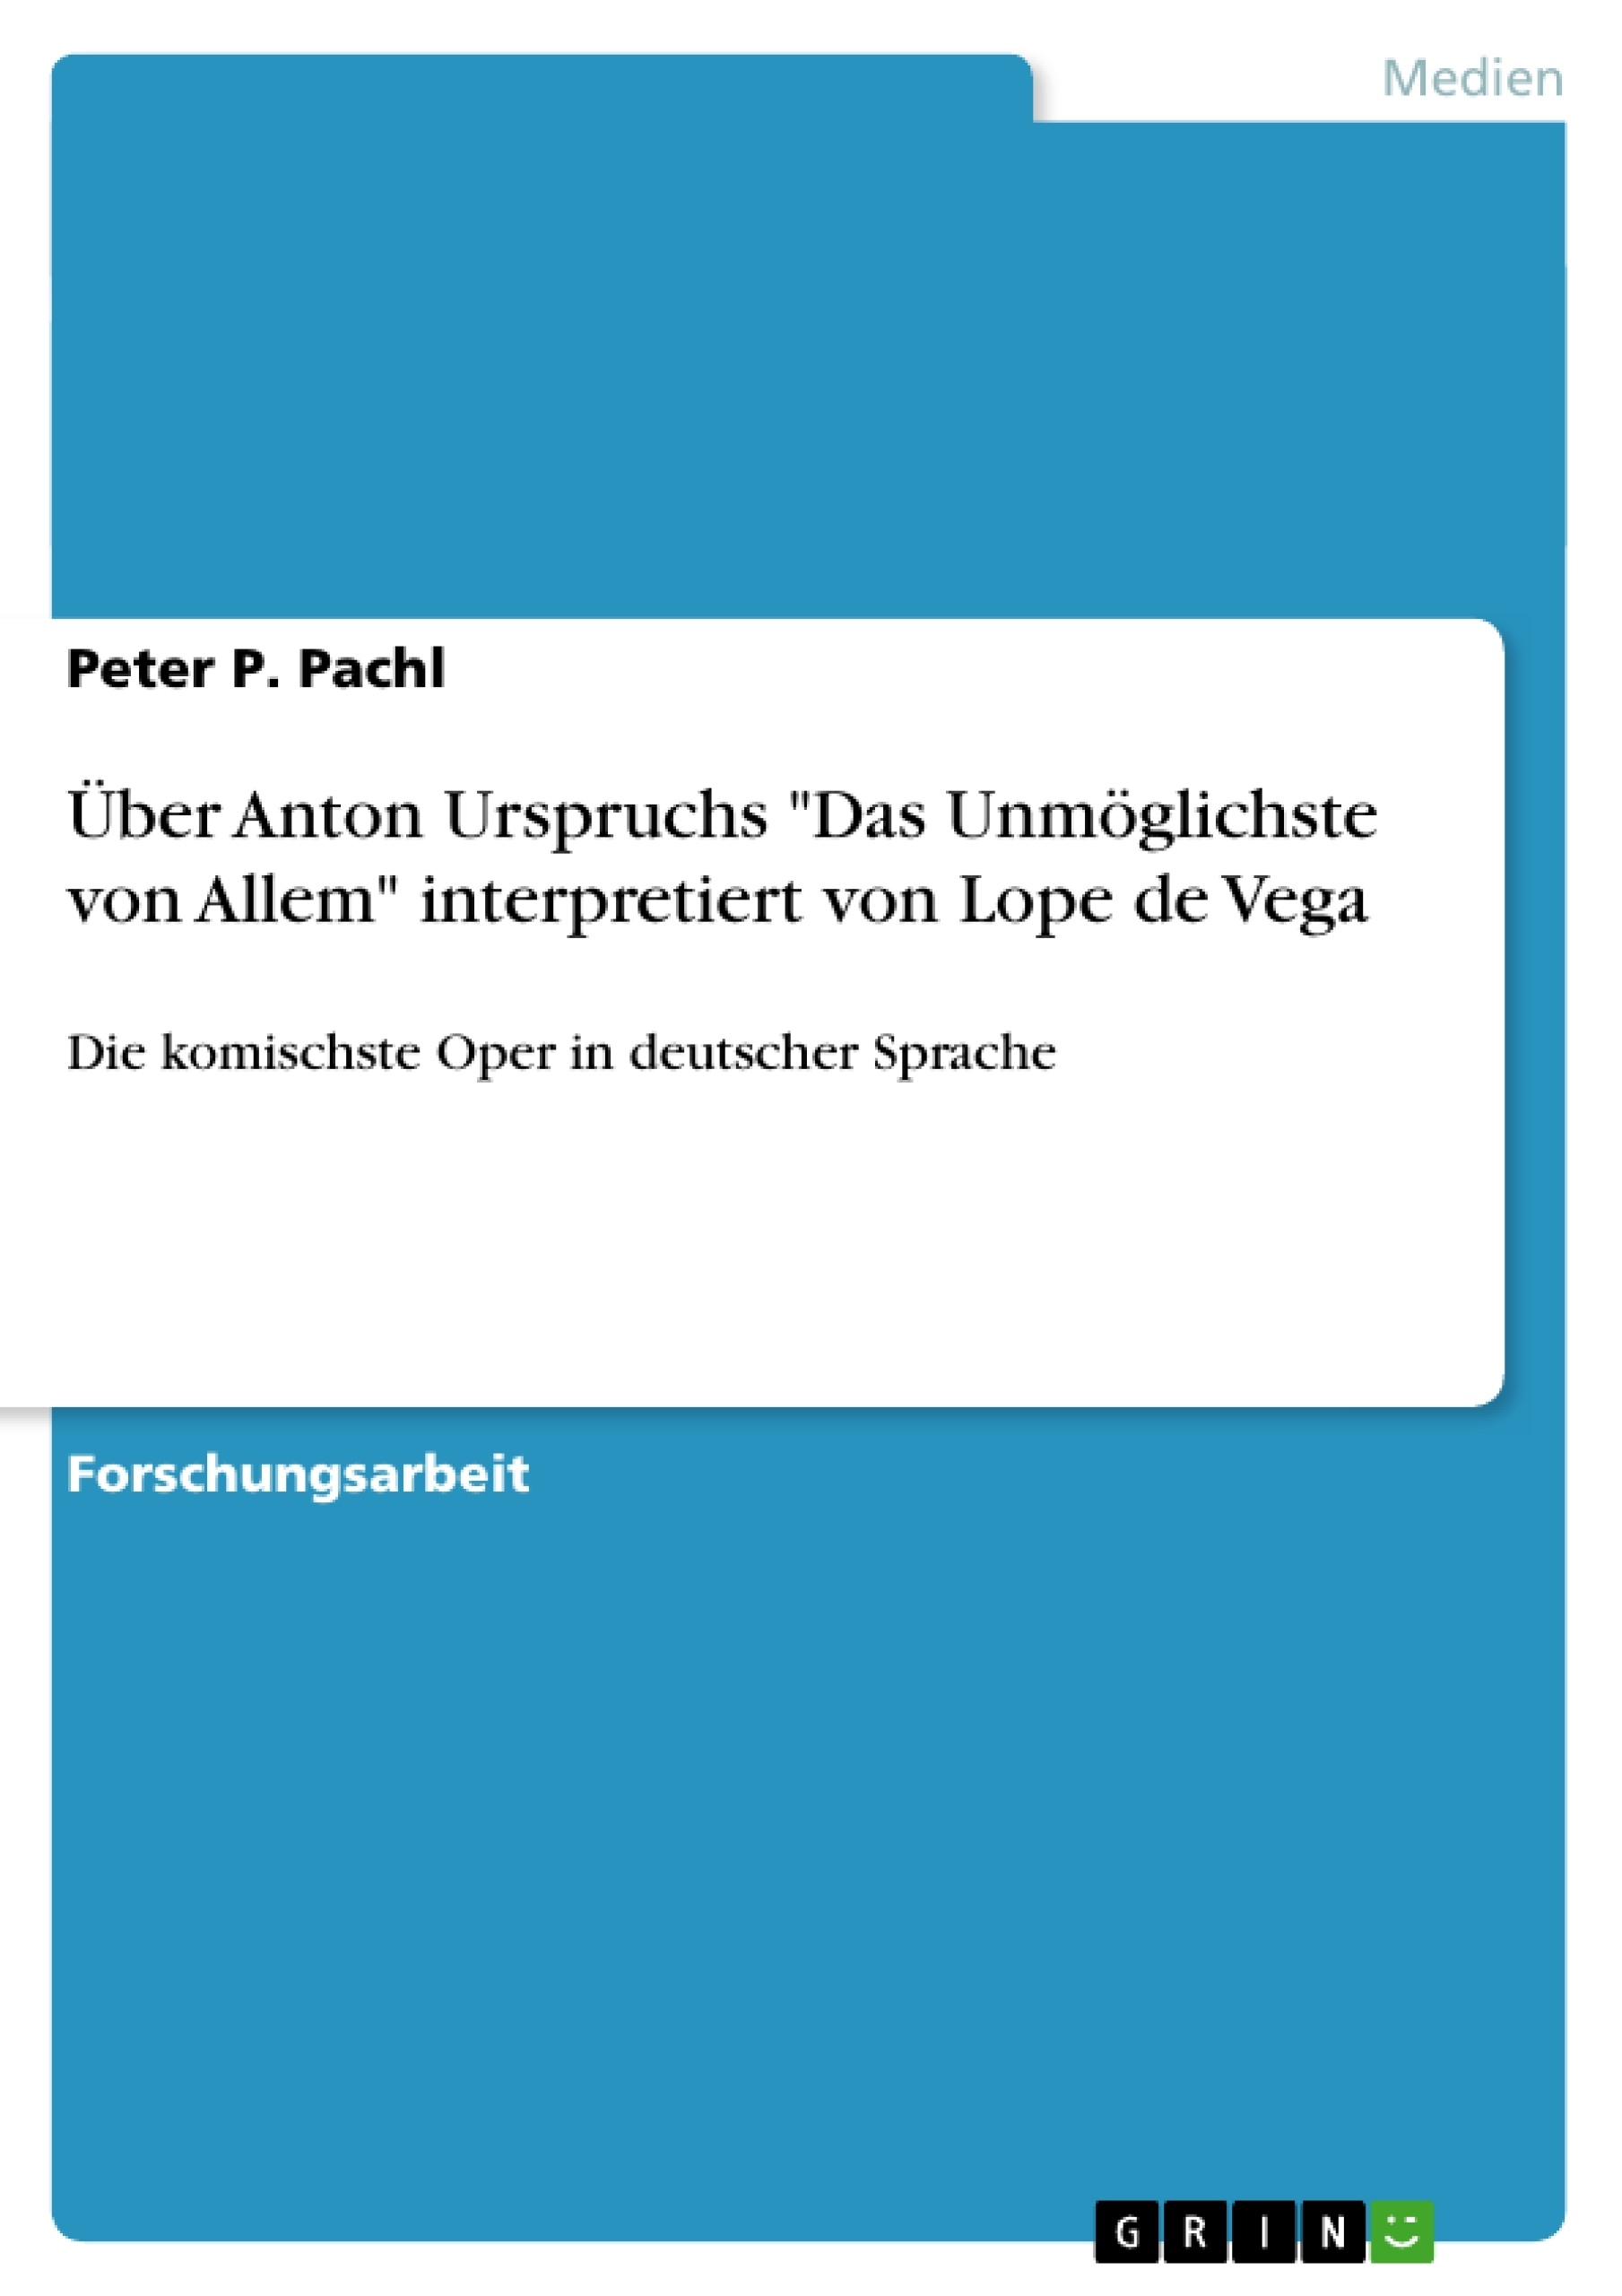 Title: Über Anton Urspruchs "Das Unmöglichste von Allem" interpretiert von Lope de Vega